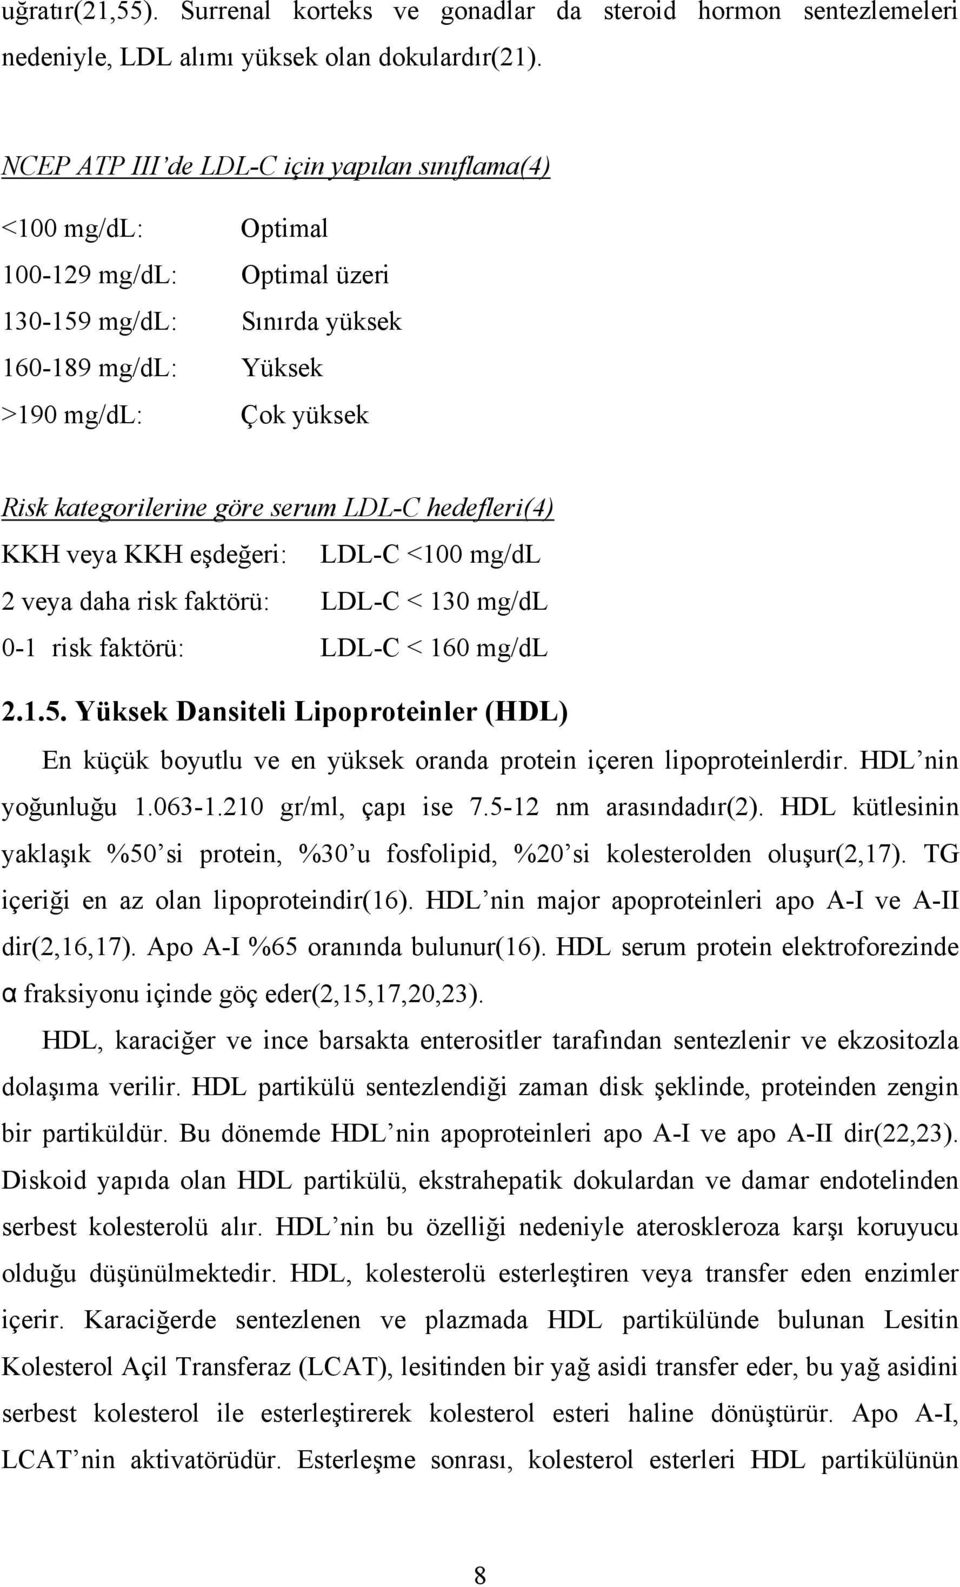 serum LDL-C hedefleri(4) KKH veya KKH eşdeğeri: LDL-C <100 mg/dl 2 veya daha risk faktörü: LDL-C < 130 mg/dl 0-1 risk faktörü: LDL-C < 160 mg/dl 2.1.5.